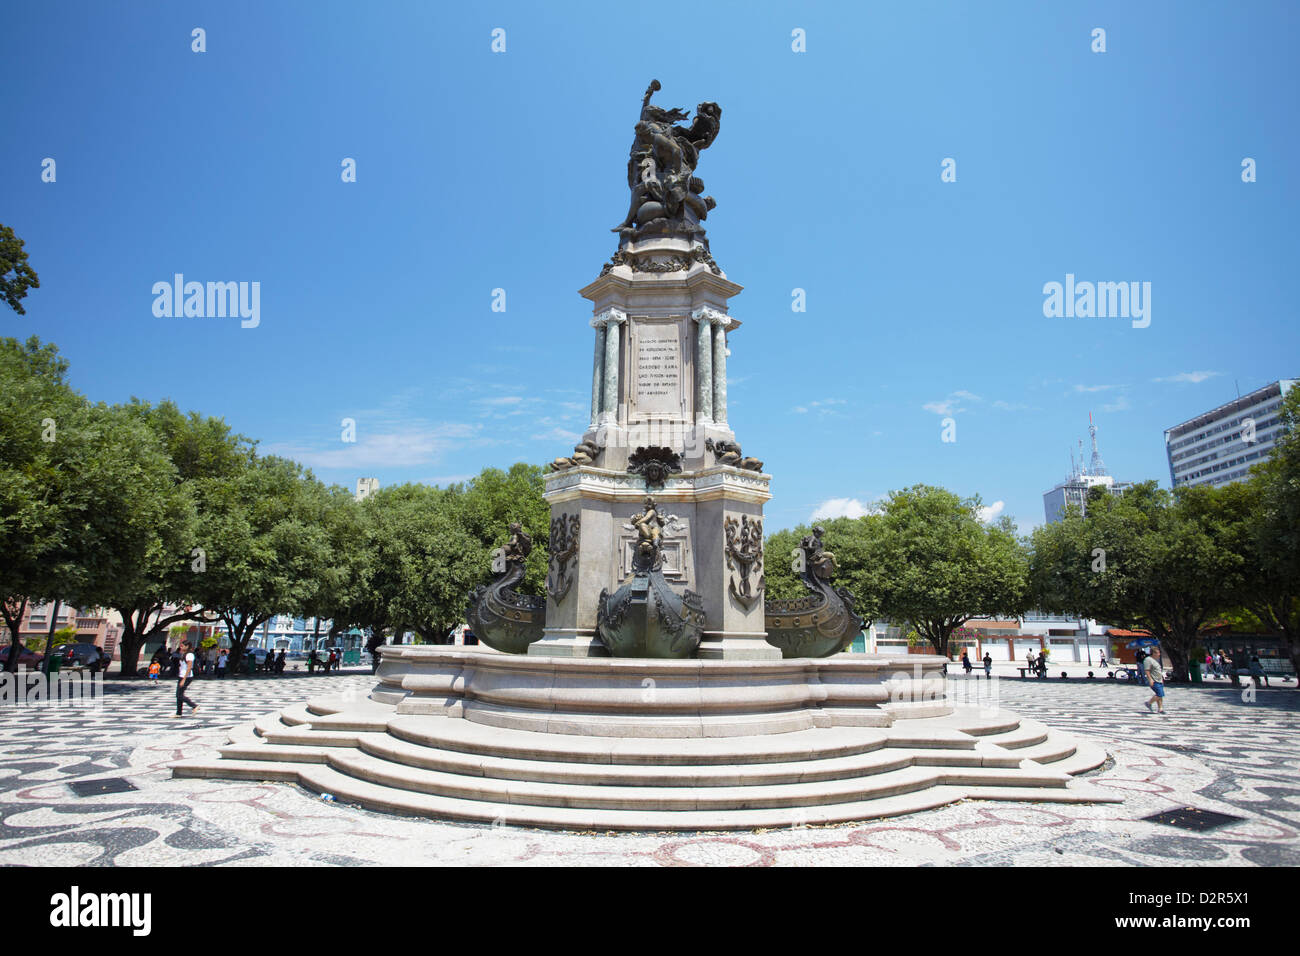 Monument à Praça Sao Sebastiao (St. Sebastian Square), Manaus, Amazonas, Brésil, Amérique du Sud Banque D'Images